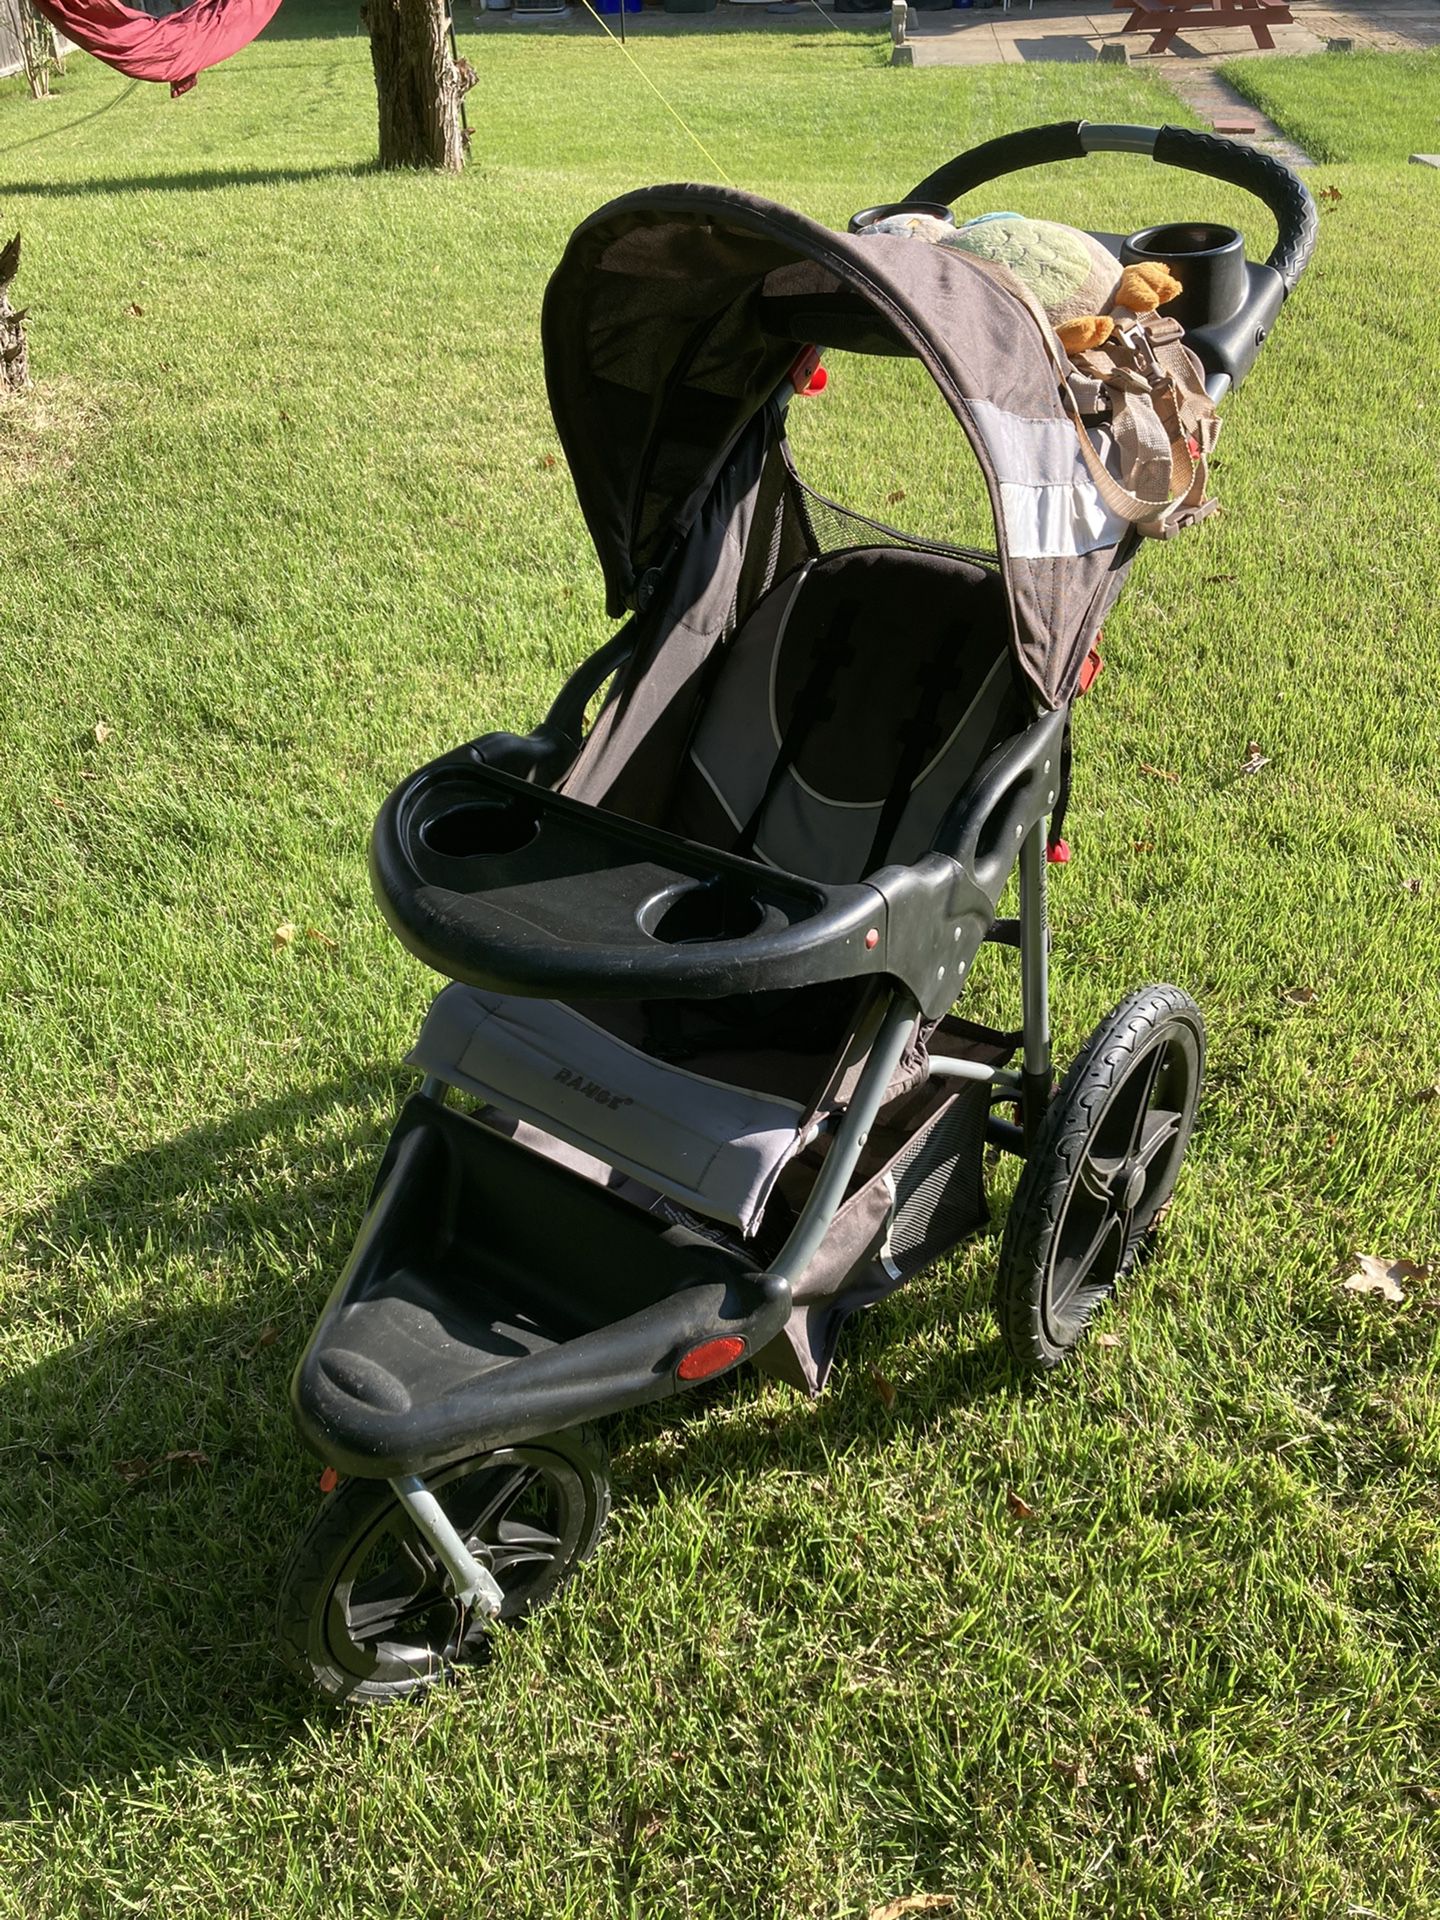 Baby Trend Range Jogger Stroller